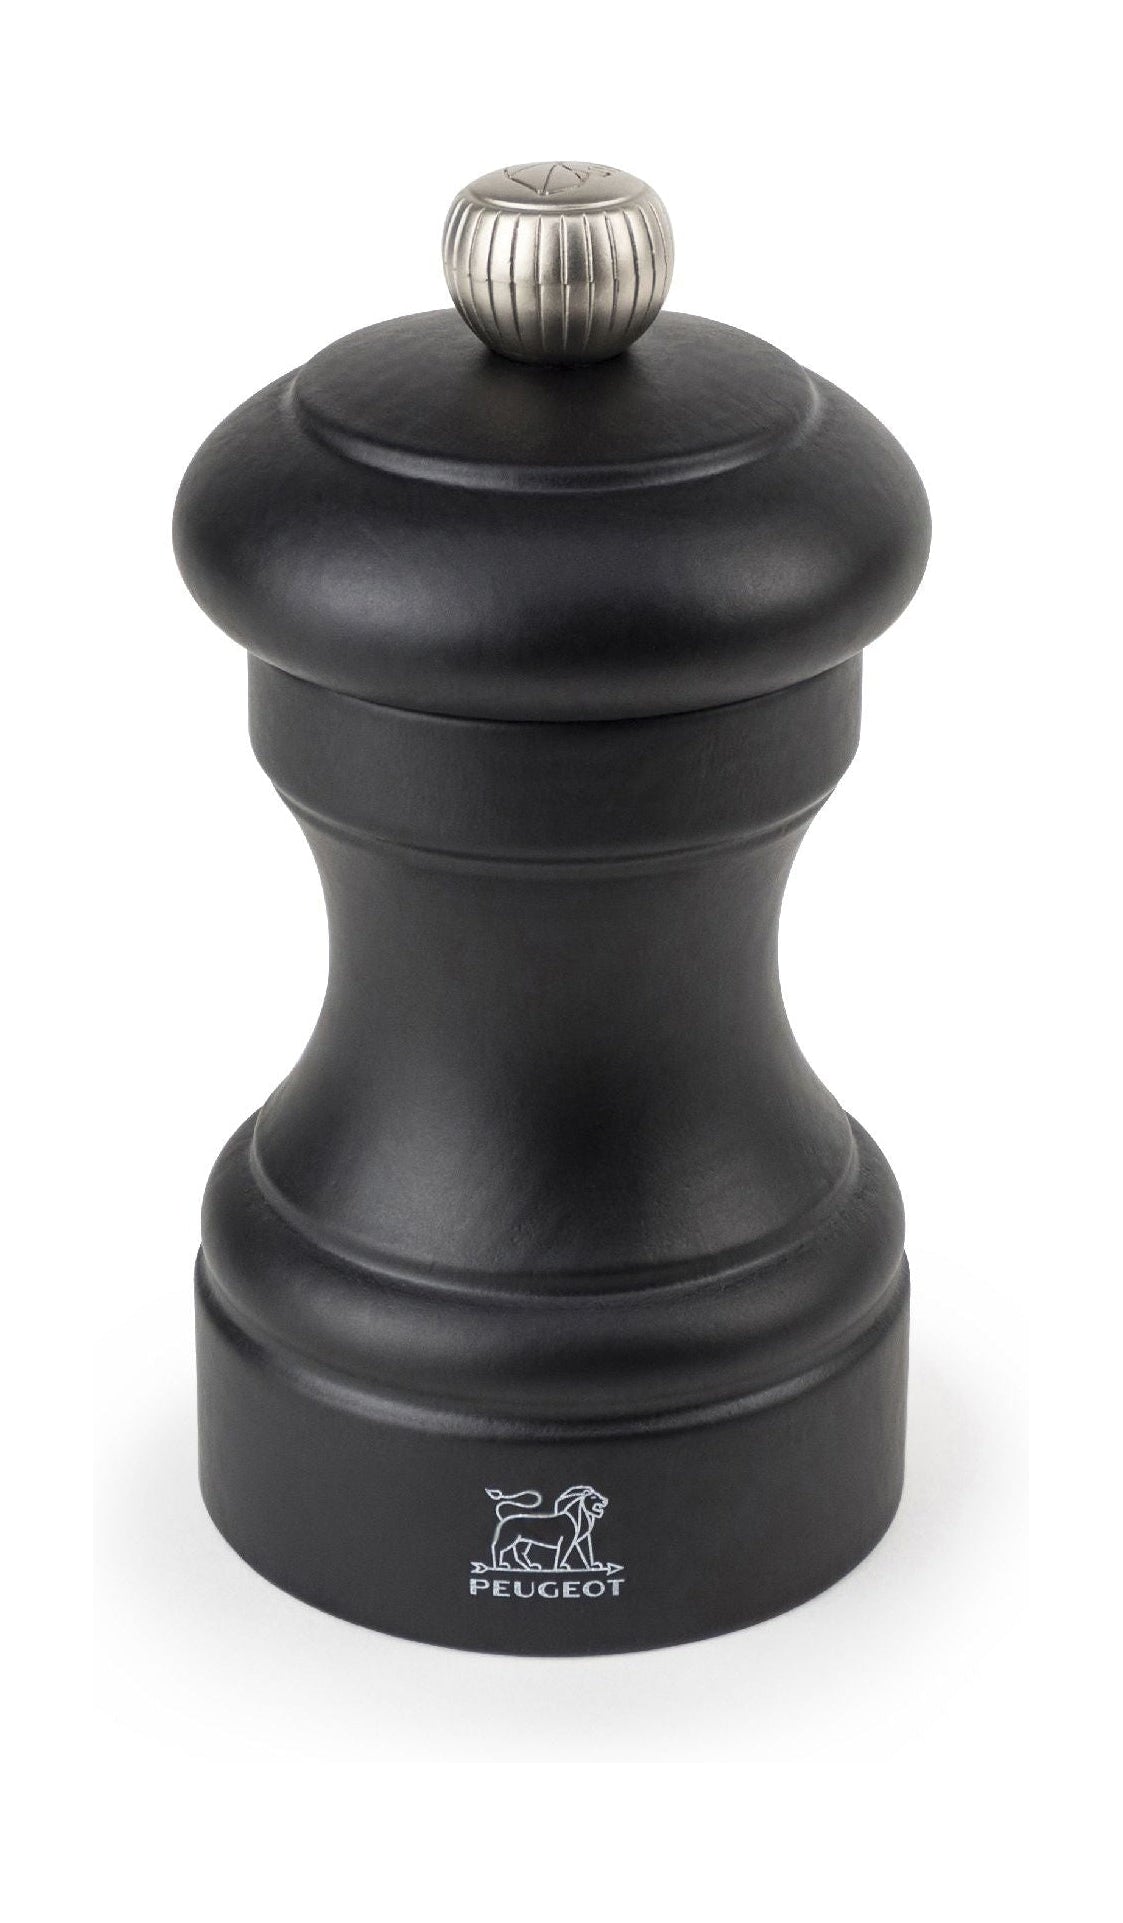 Peugeot Bistro saltkvarn svart, 10 cm